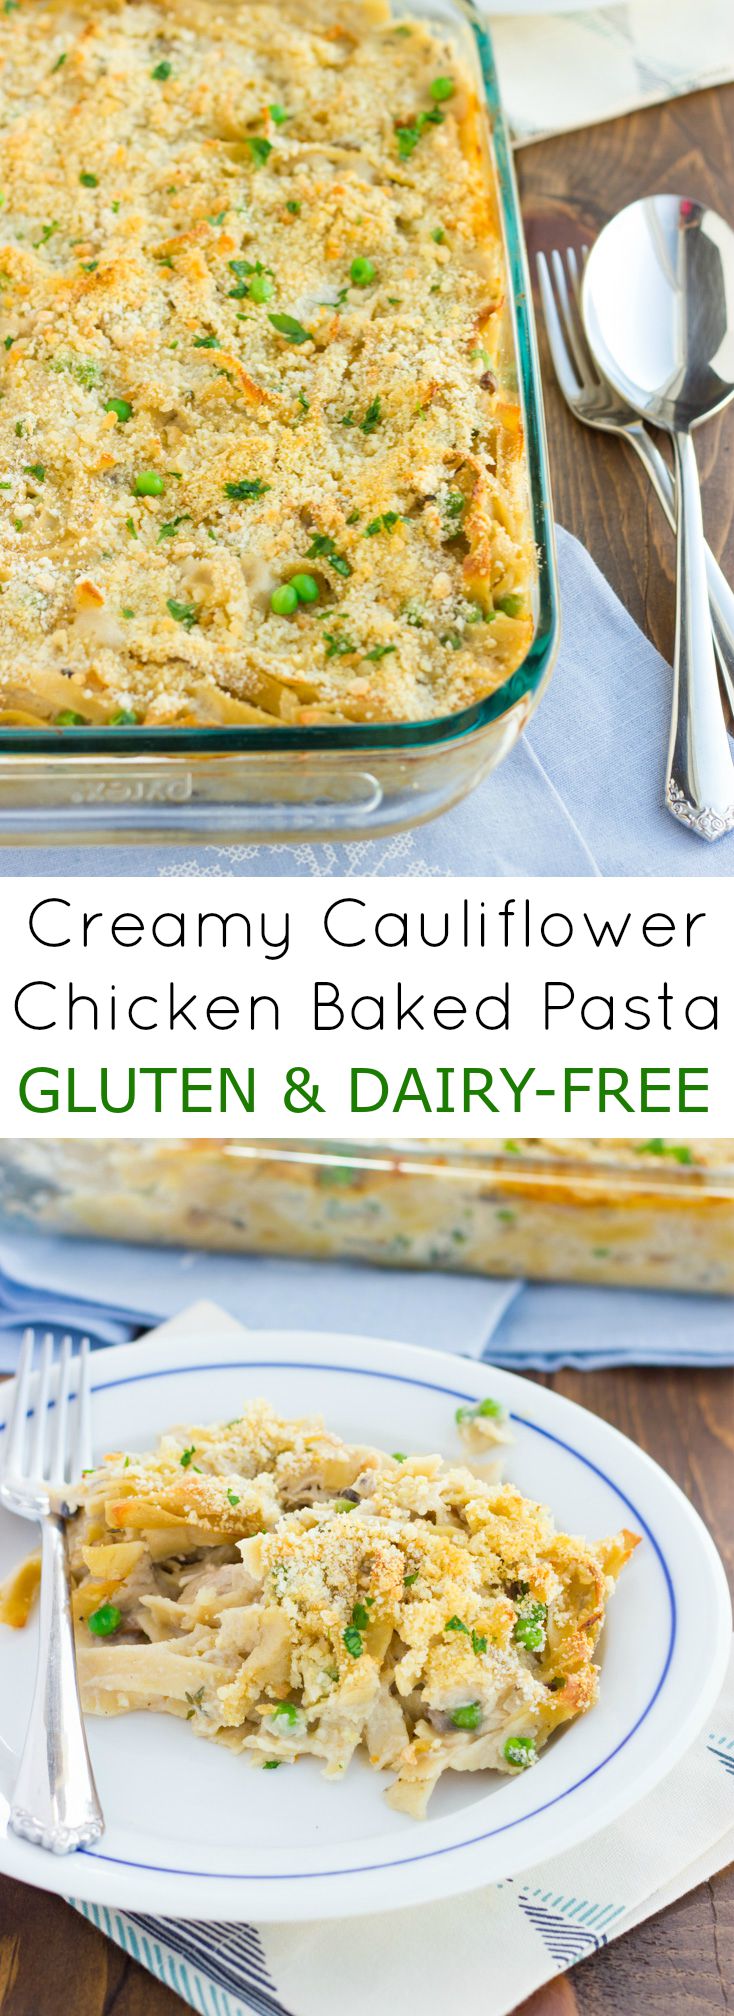 Gluten & Dairy-Free Baked Chicken Pasta with Cauliflower Cream Sauce! 